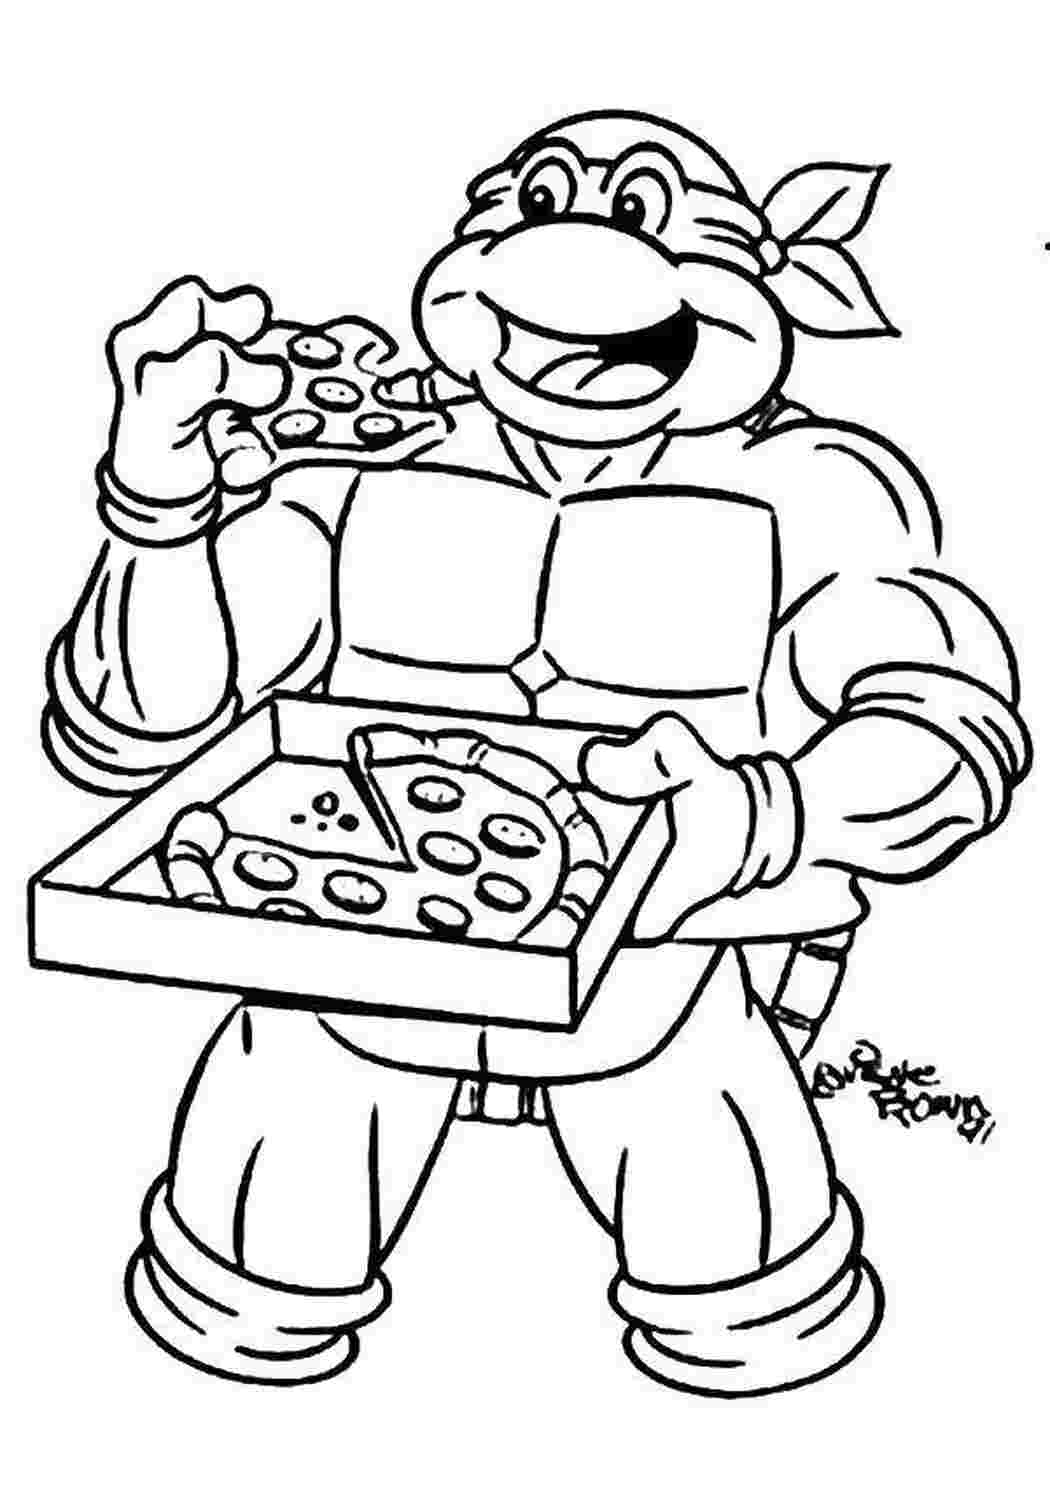 Раскраски Черепашка ниндзя и пицца черепашки ниндзя черепаха, ниндзя, пицца, коробка